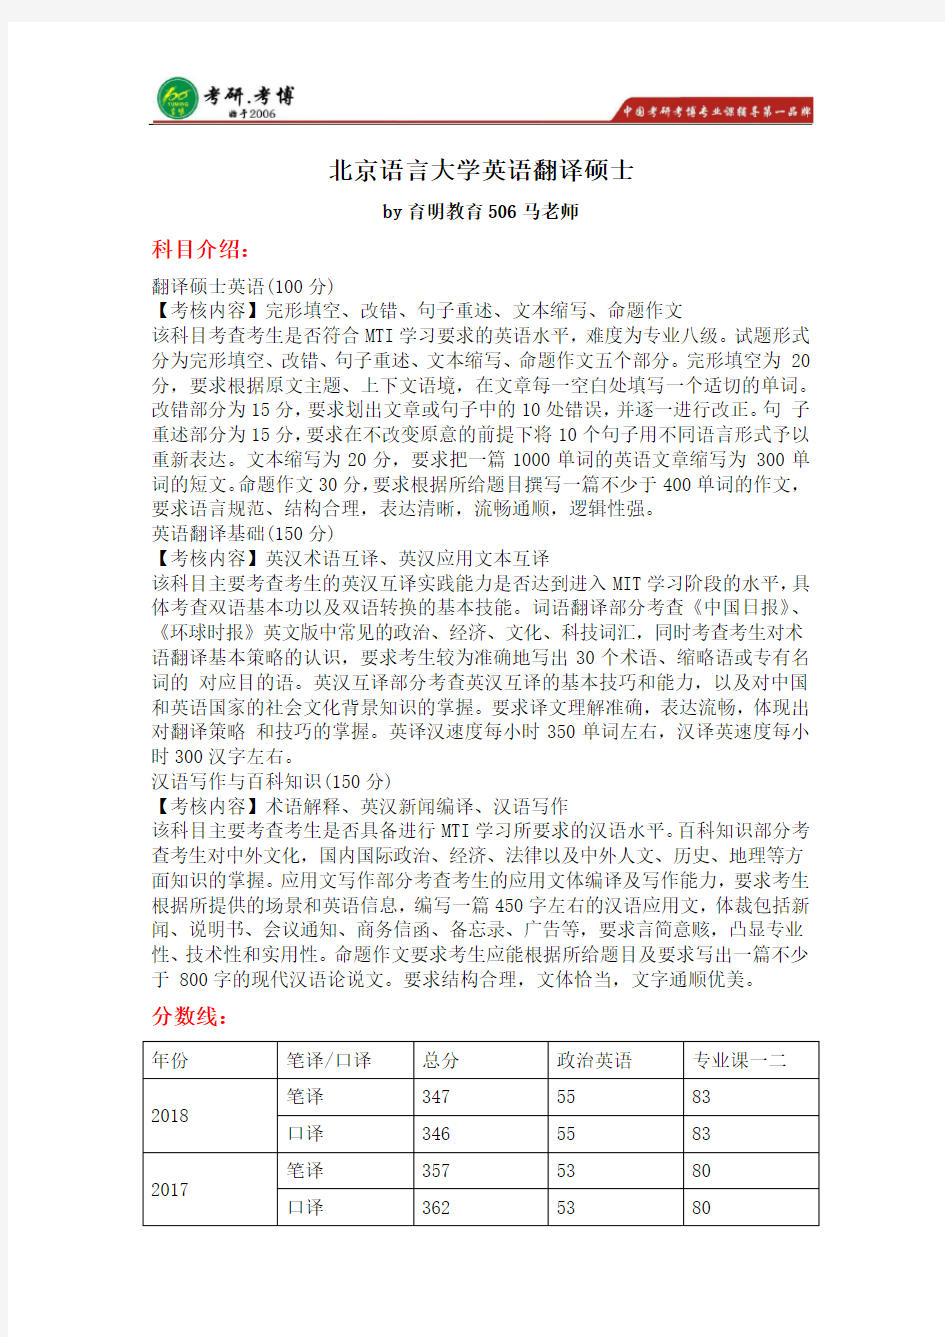 2019年北京语言大学翻译硕士录取名单 分数线 难度分析